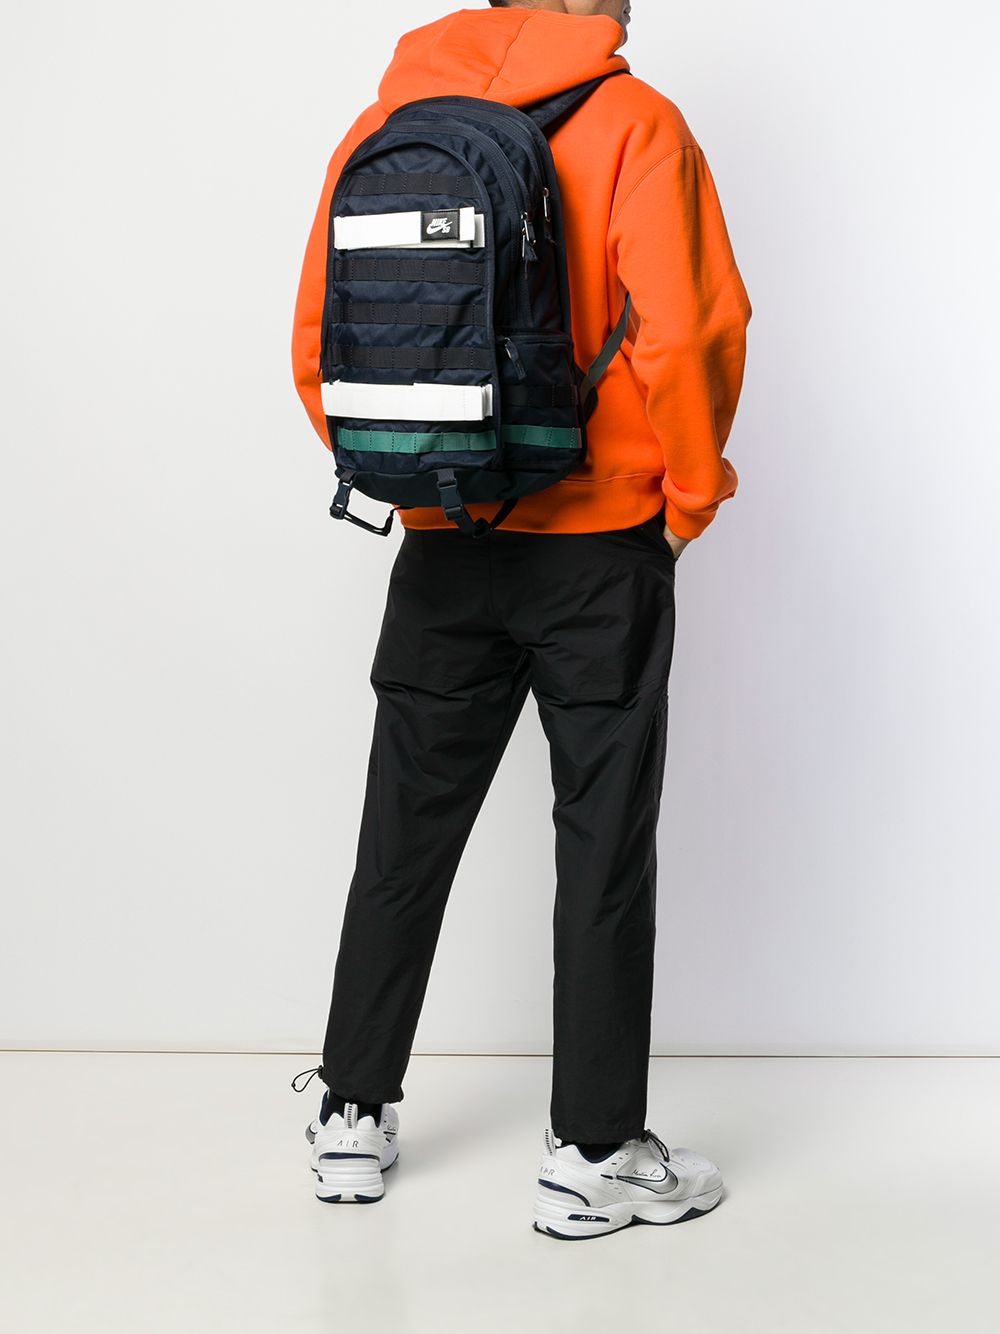 Jutro Jednostavan Zajednicki Nike Sb Mini Backpack Men Ubidesignworks Com